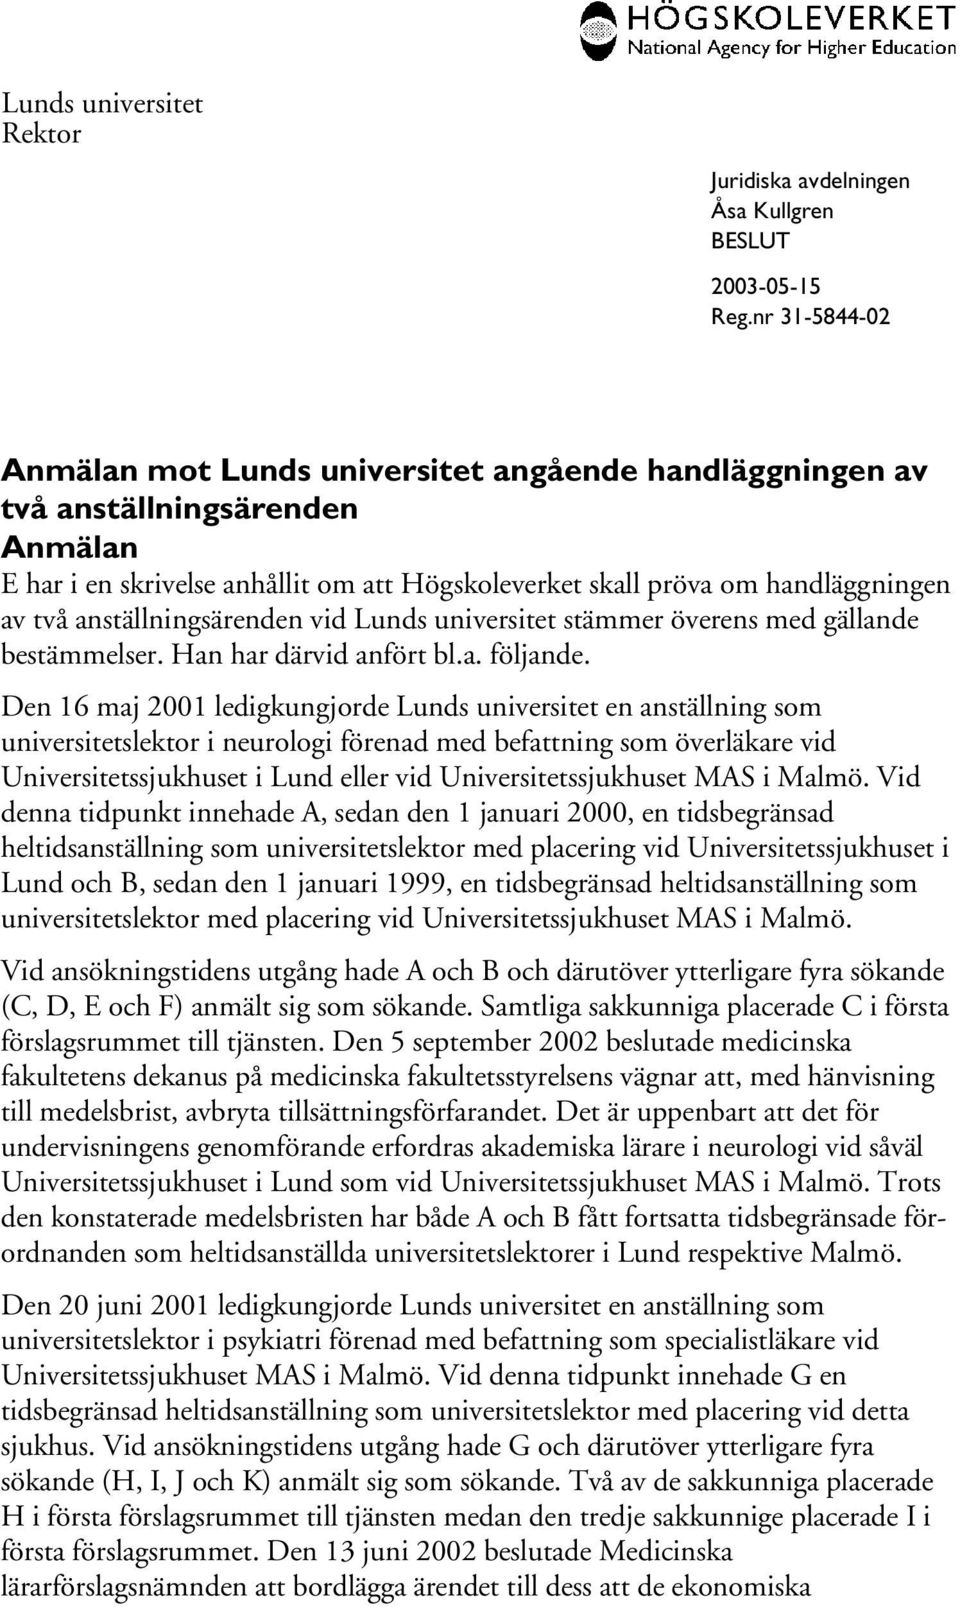 Den 16 maj 2001 ledigkungjorde Lunds universitet en anställning som universitetslektor i neurologi förenad med befattning som överläkare vid Universitetssjukhuset i Lund eller vid